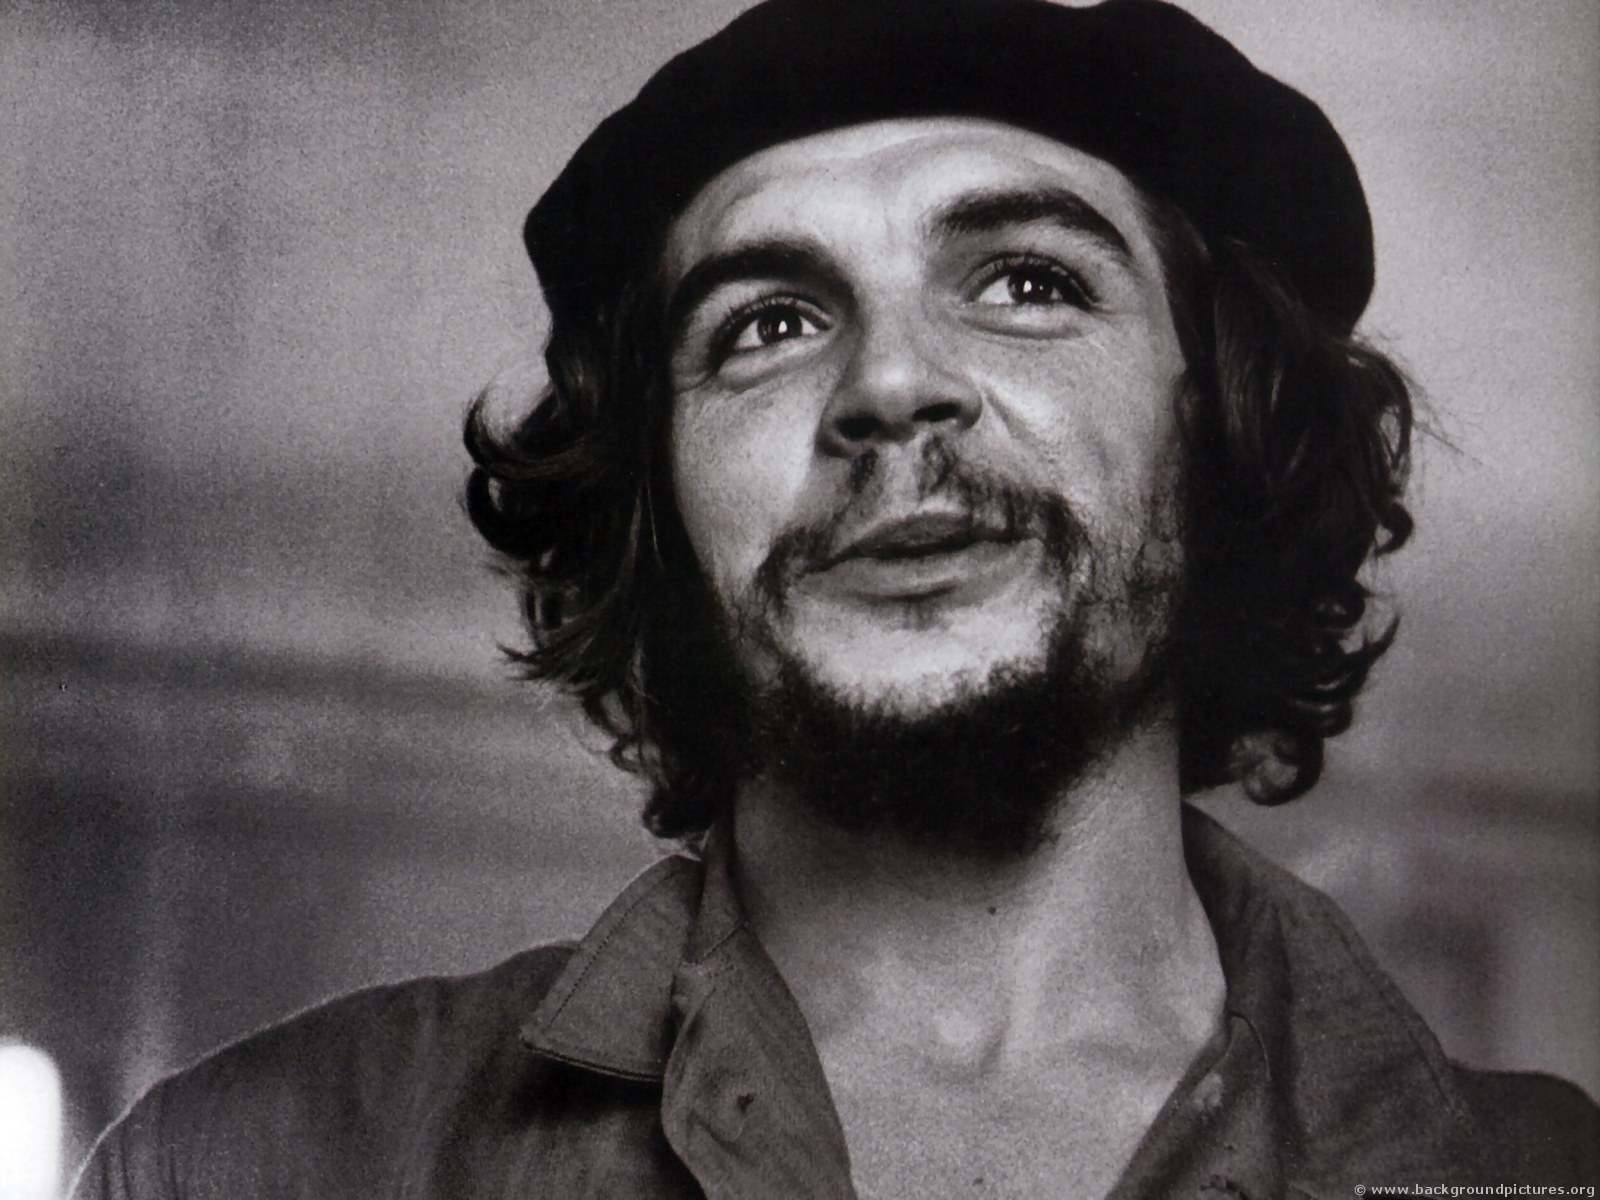 Tal día como hoy, Ernesto Guevara llegaba al mundo con la revolución bajo el brazo